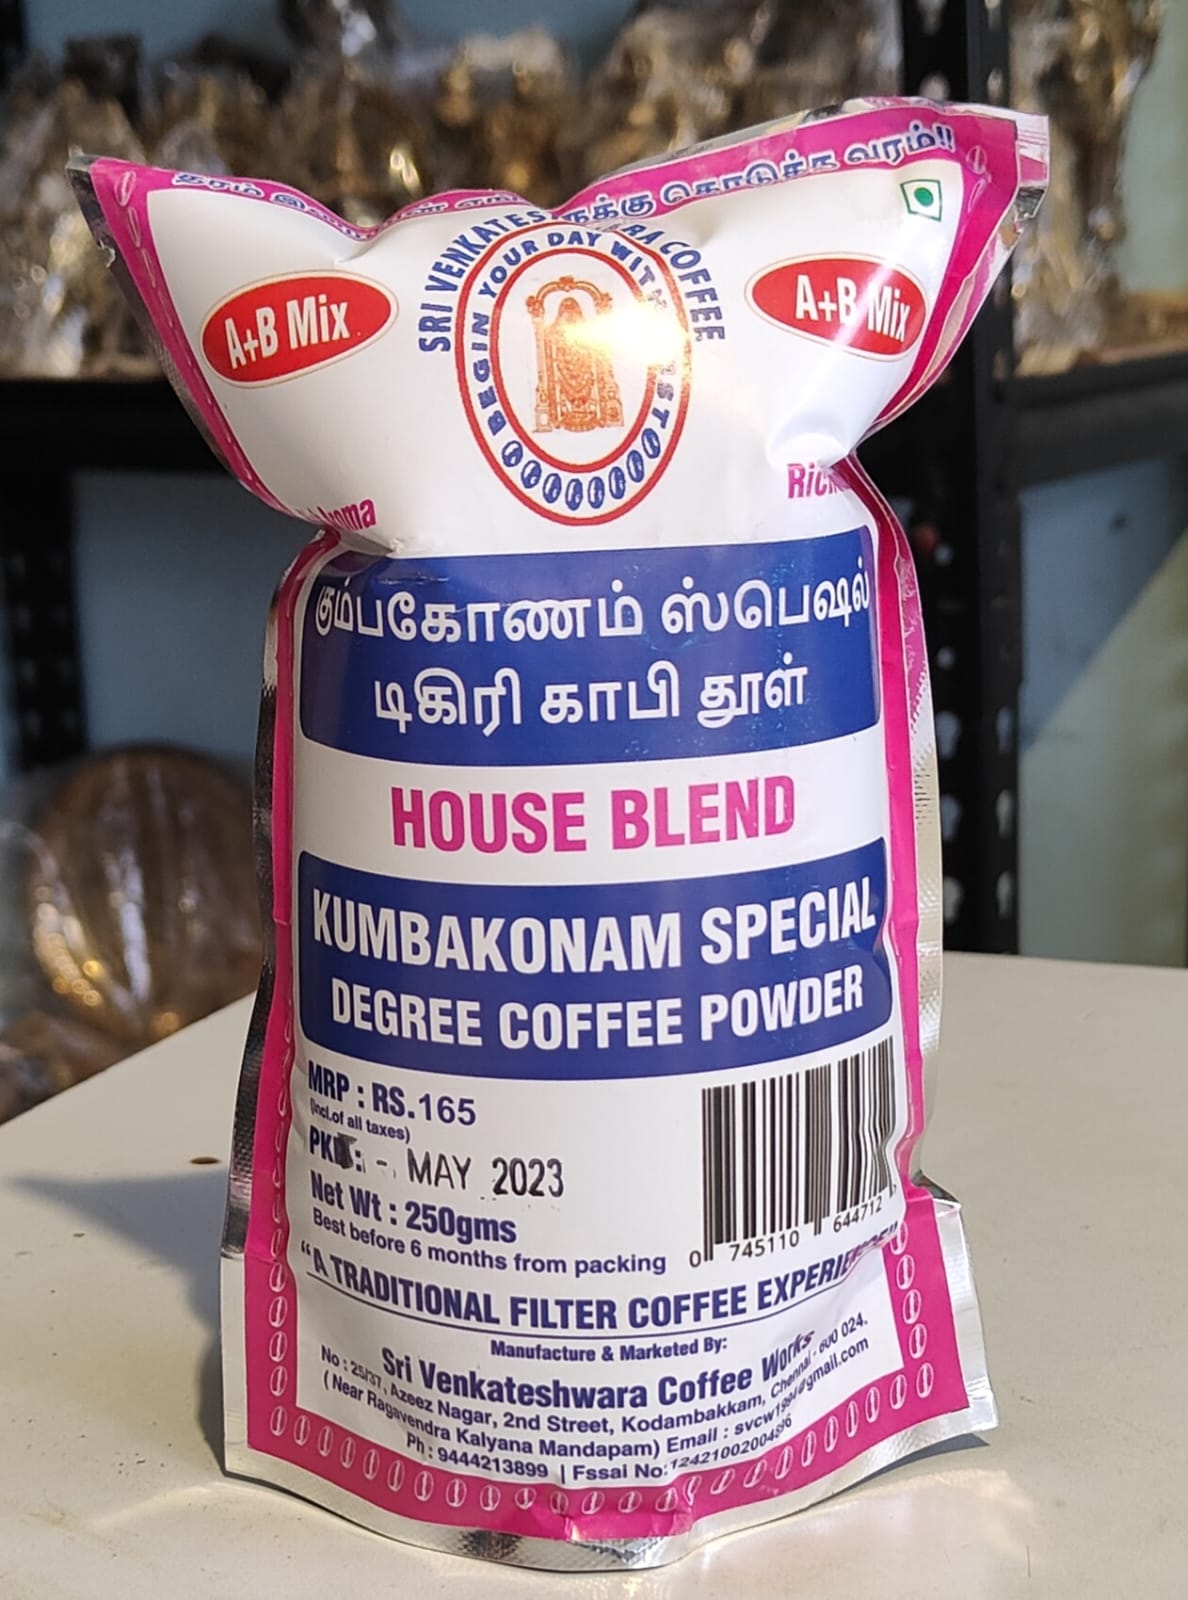 Kumbakonam Spl degree coffee powder